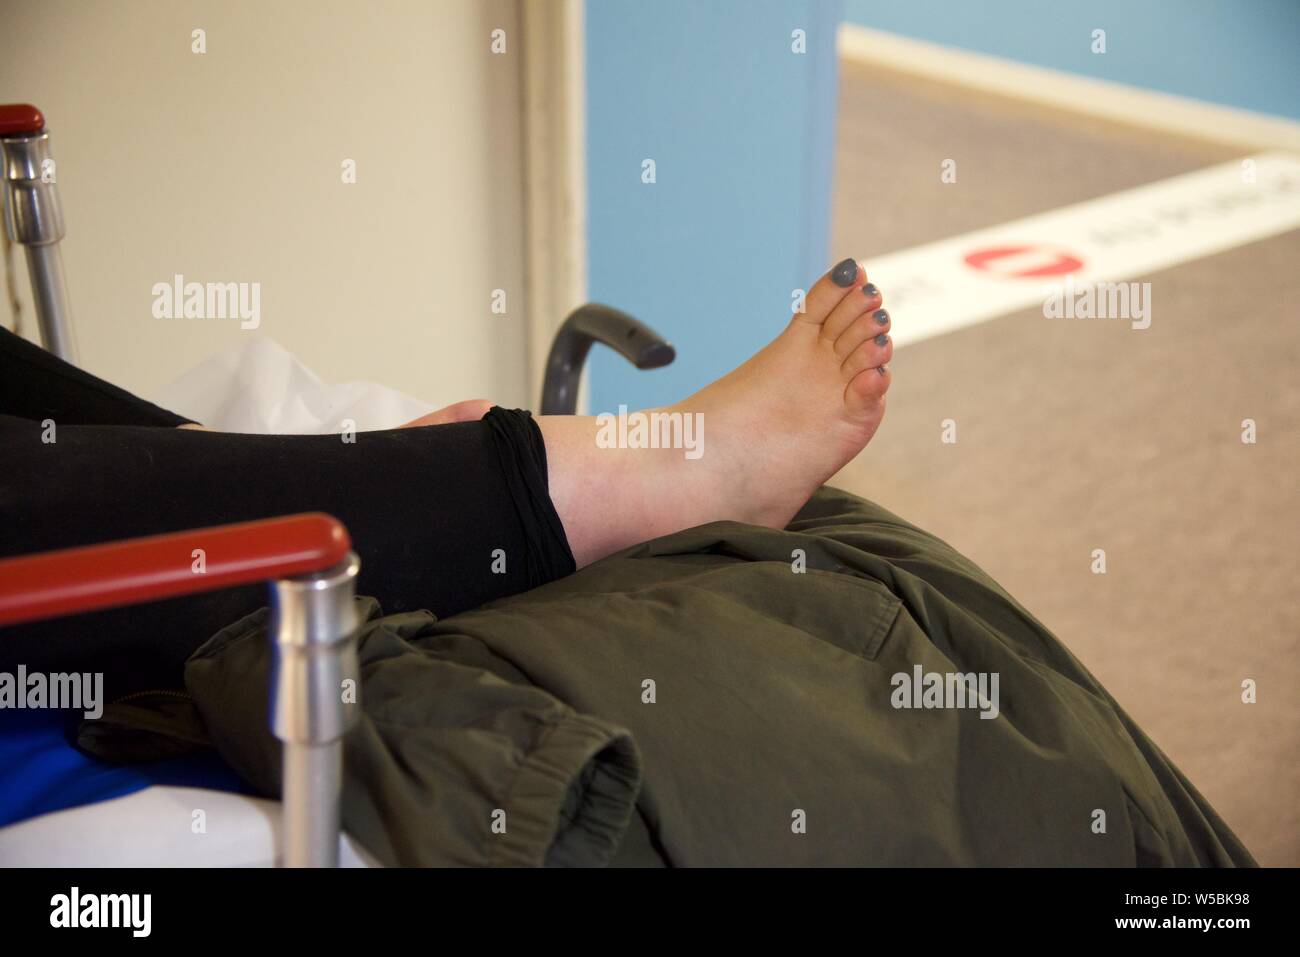 Gebrochenen Knöchel: eine Patientin mit einem gebrochenen rechten Knöchel wartet auf einem gurney auf dem Flur eines Krankenhauses Stockfoto